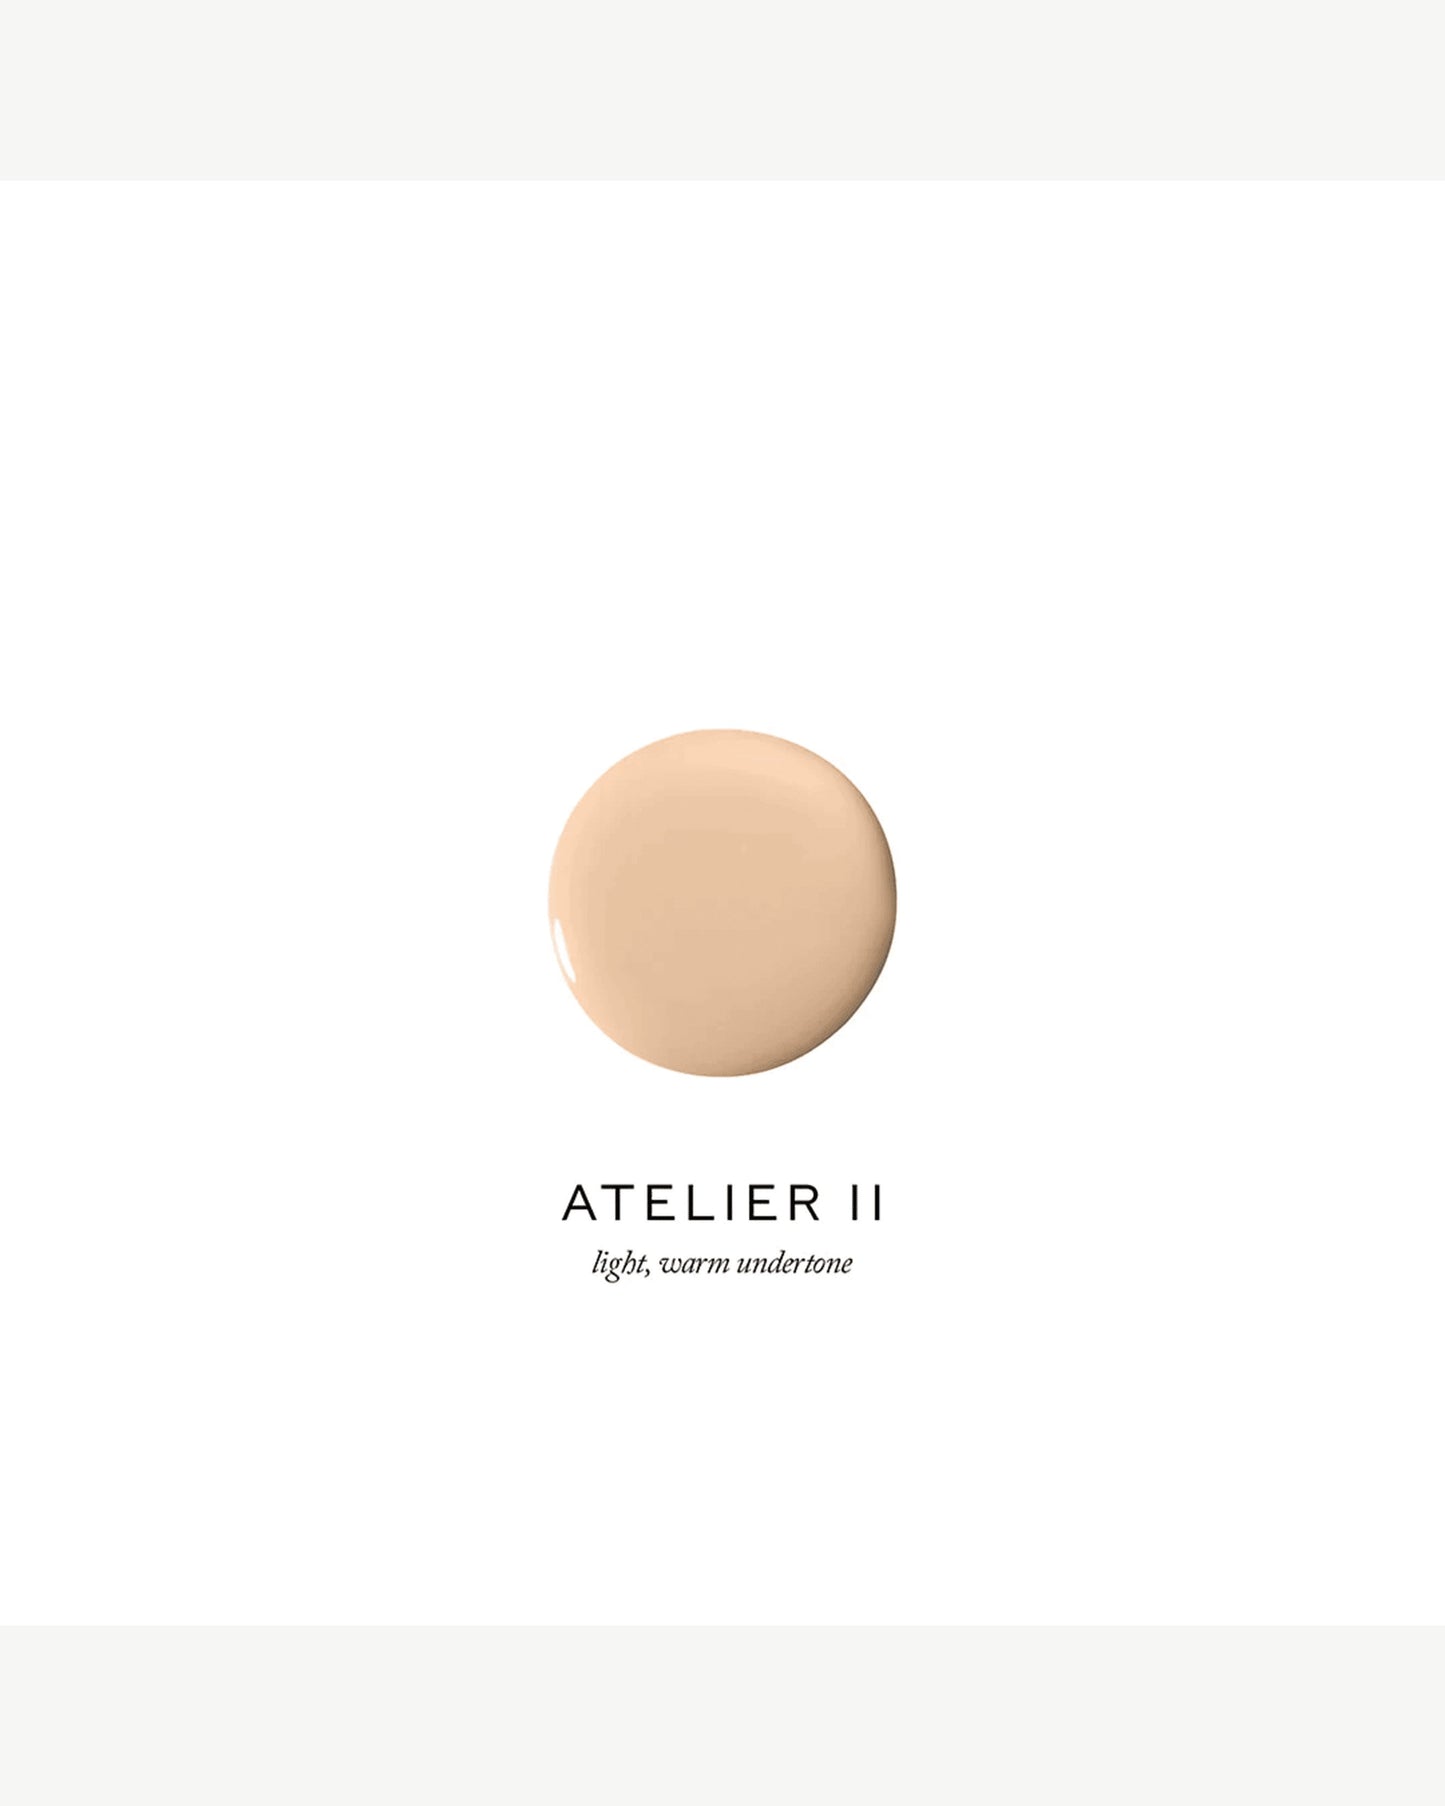 Atelier II (light, warm beige undertone)